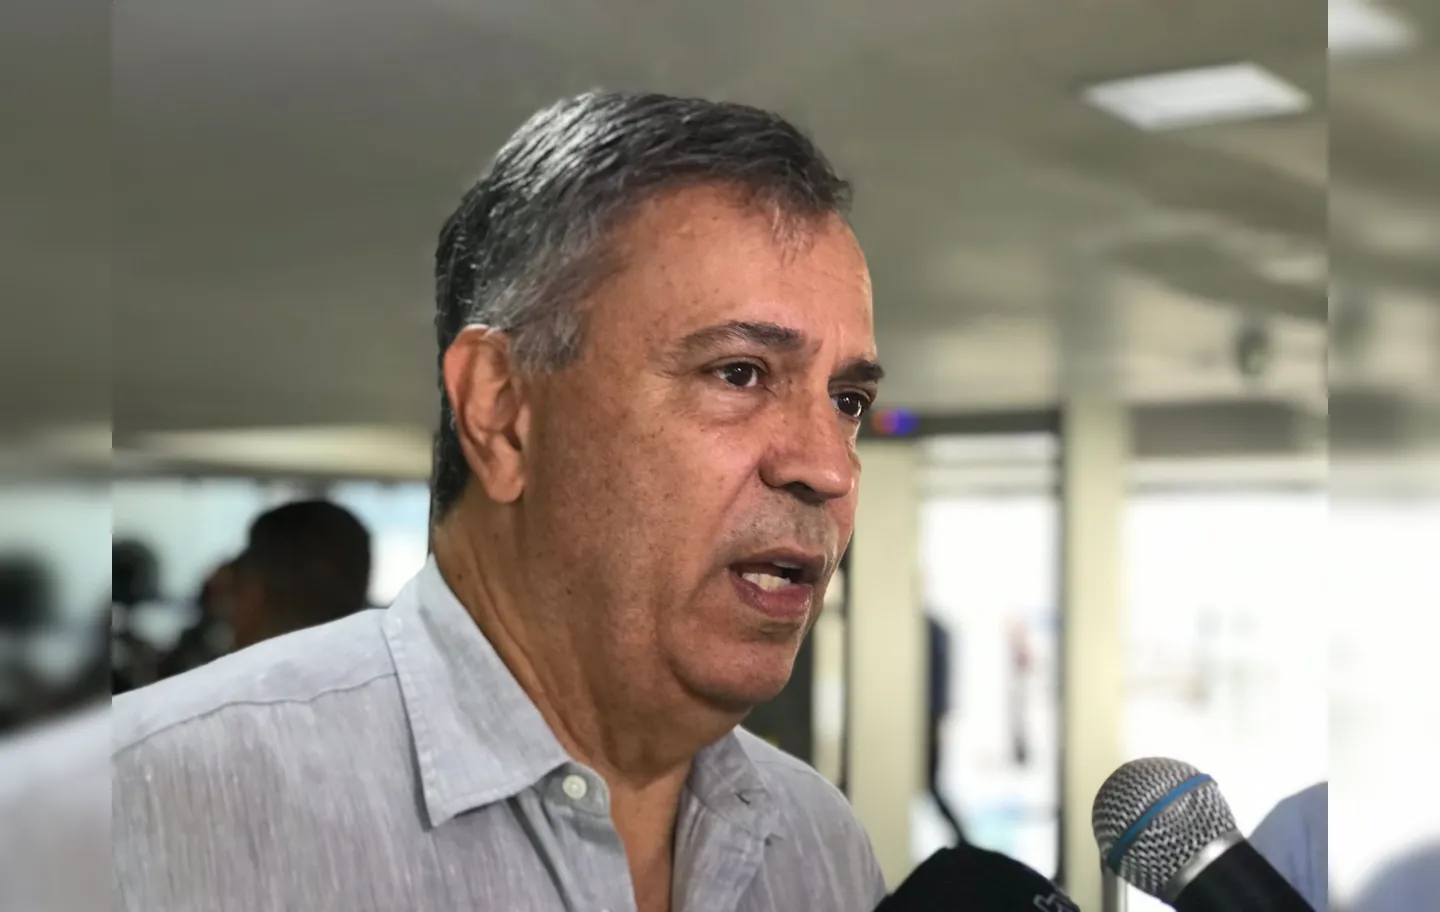 "Partido independente, sem coligação e sem aliança com ninguém", diz Félix sobre PDT